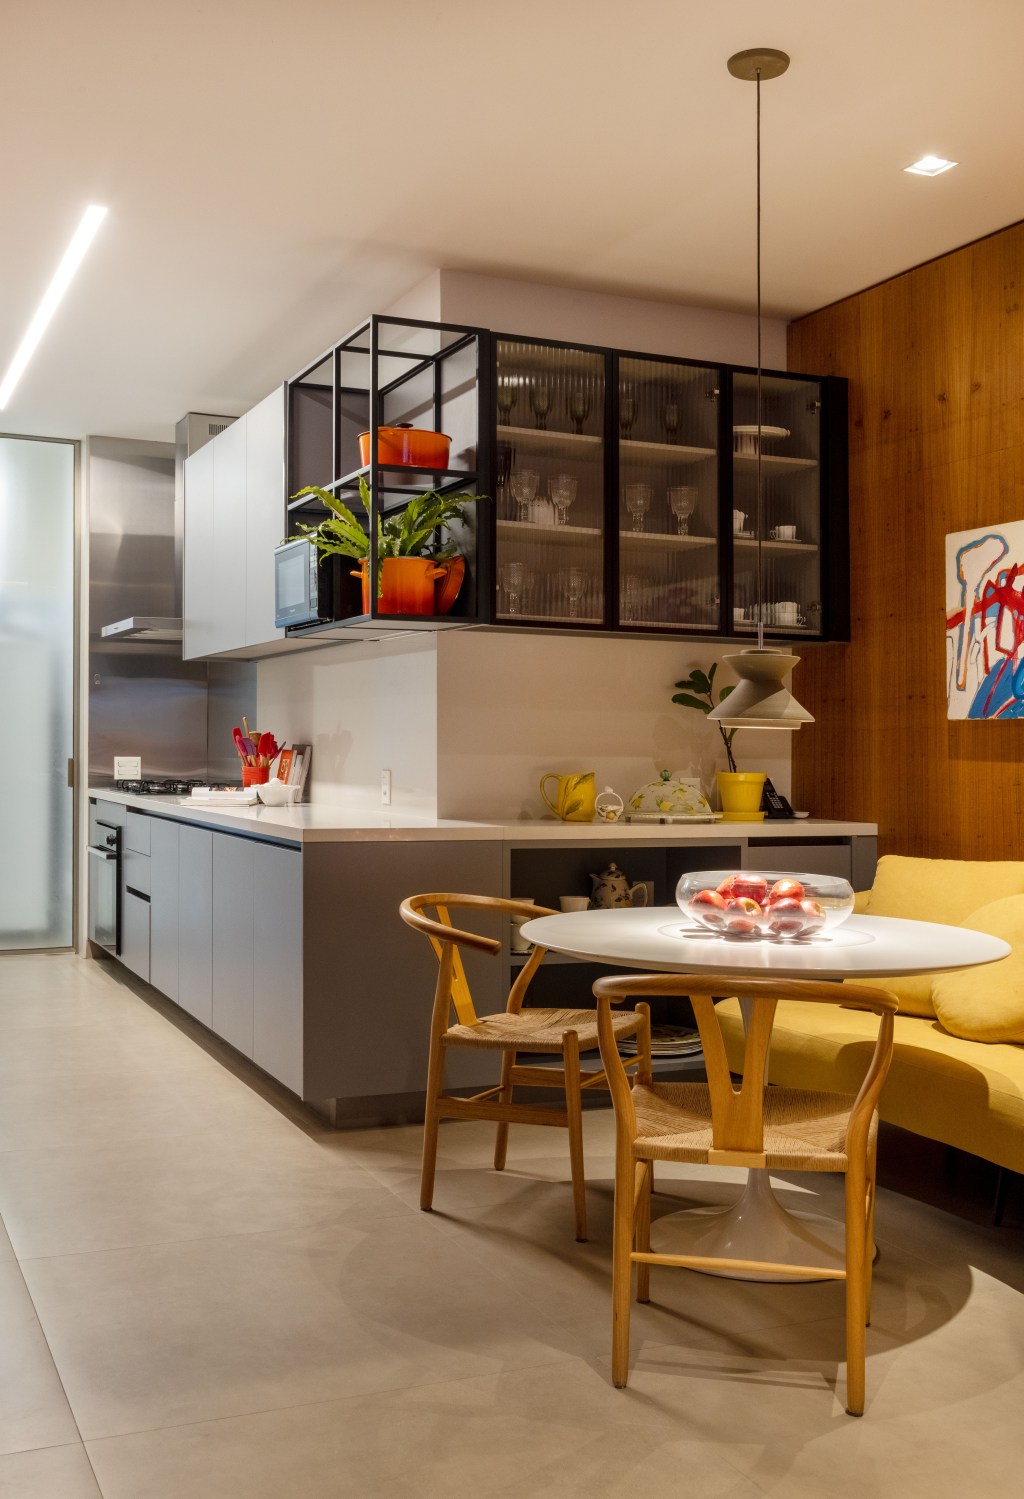 Apê 400 m² cara de casa design brasileiro arte Escala Arquitetura Rio de Janeiro decoracao cozinha mesa canto alemao prateleira sofa